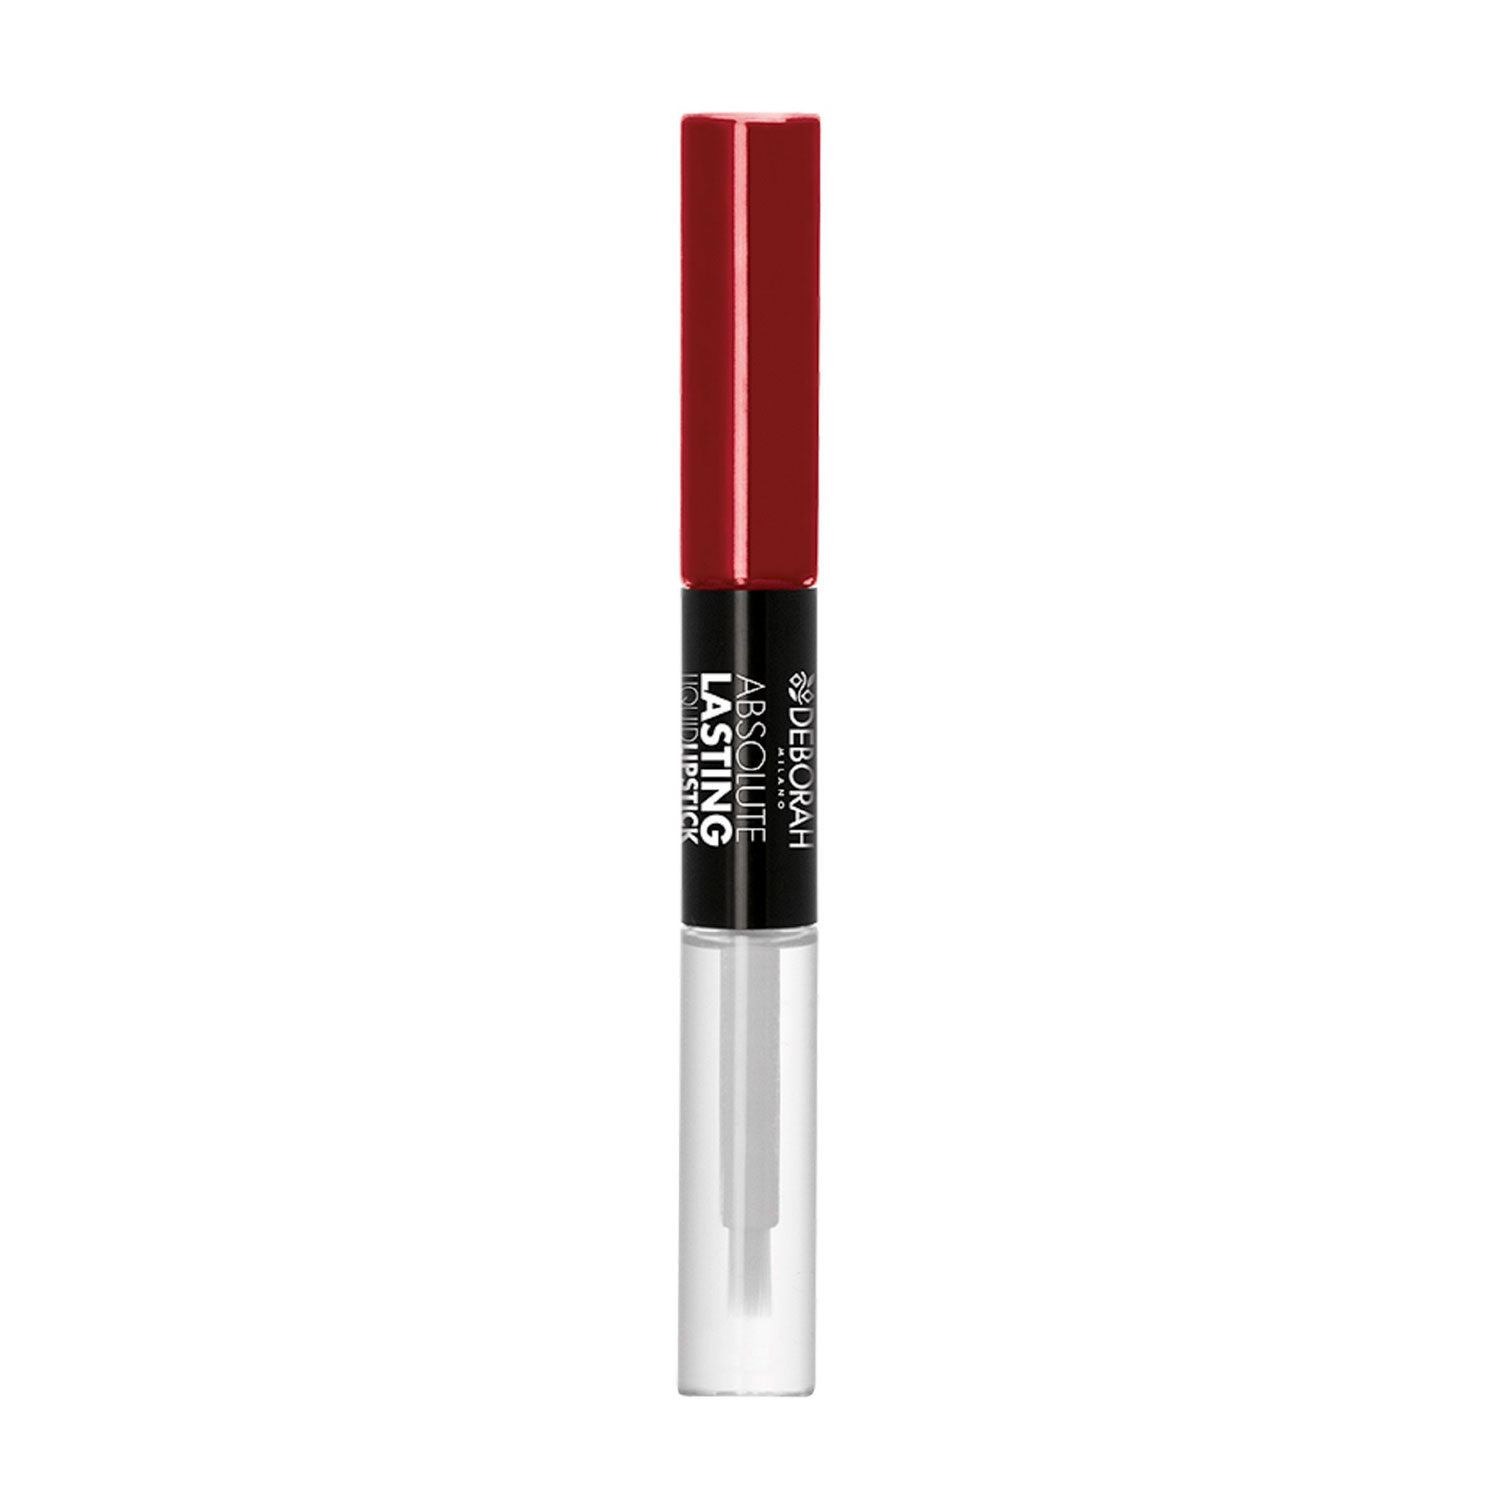 Deborah Milano Absolute Lasting Liquid Lipstick, 8ml-08 - Classic Red